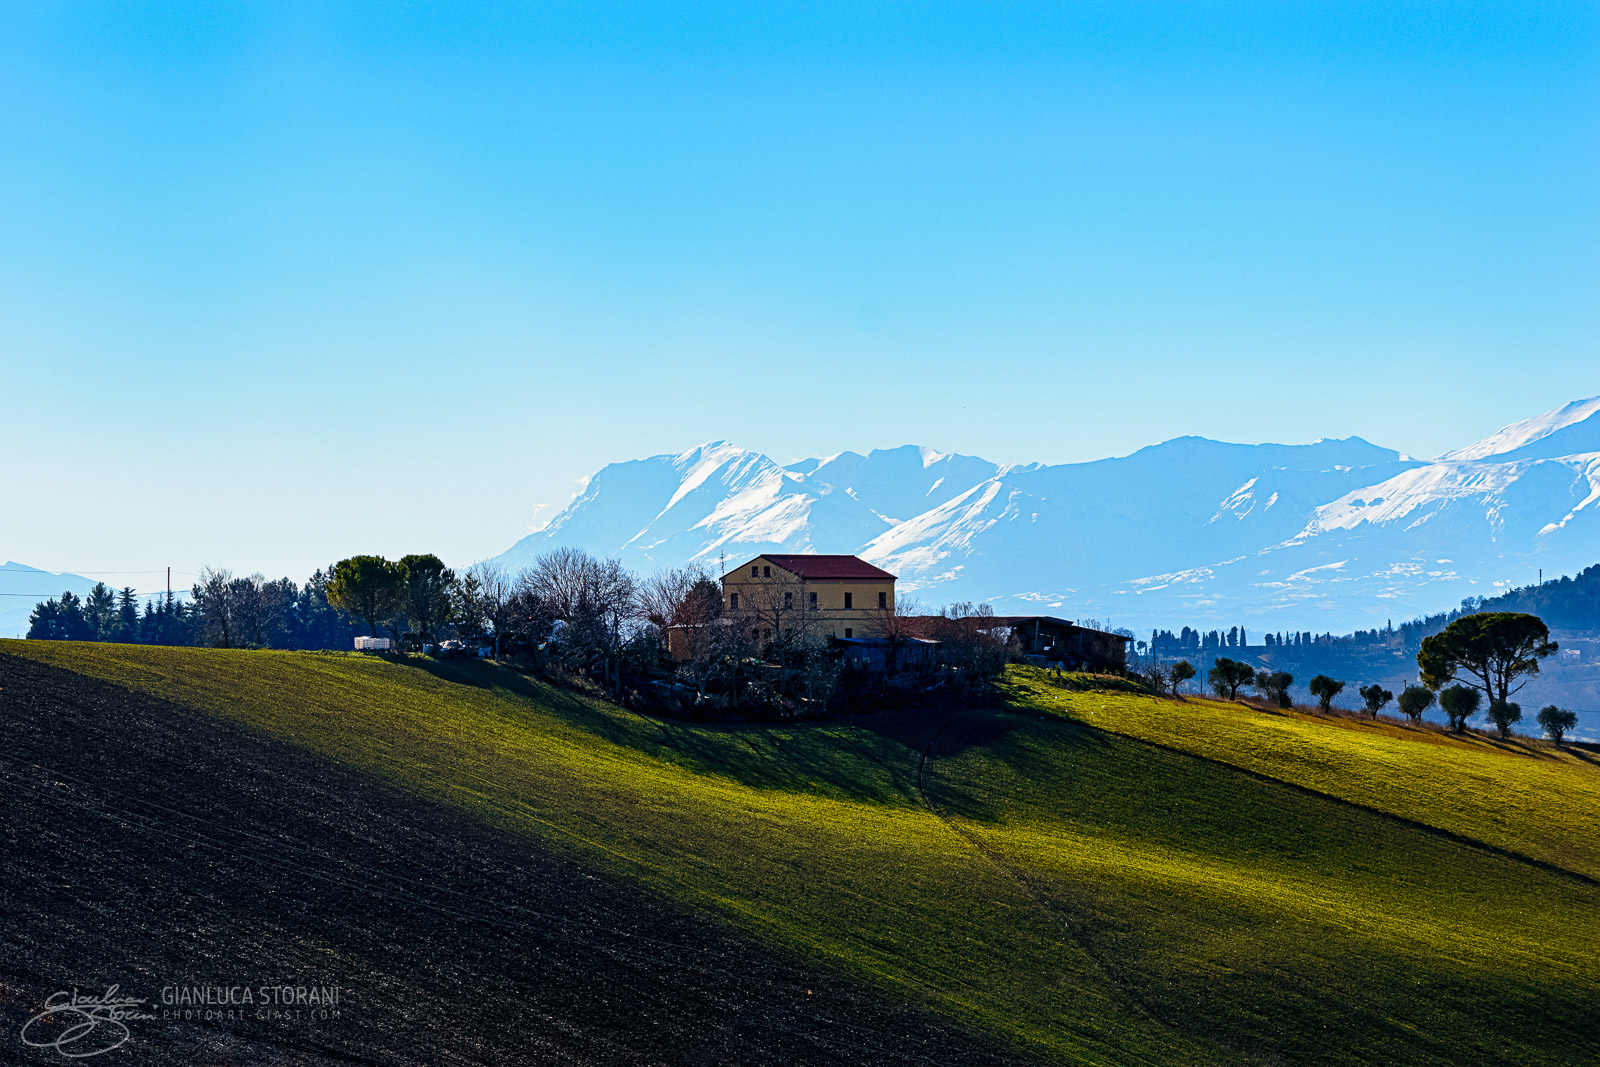 Quella casa sopra la collina - Gianluca Storani Photo Art (ID: 4-3653)